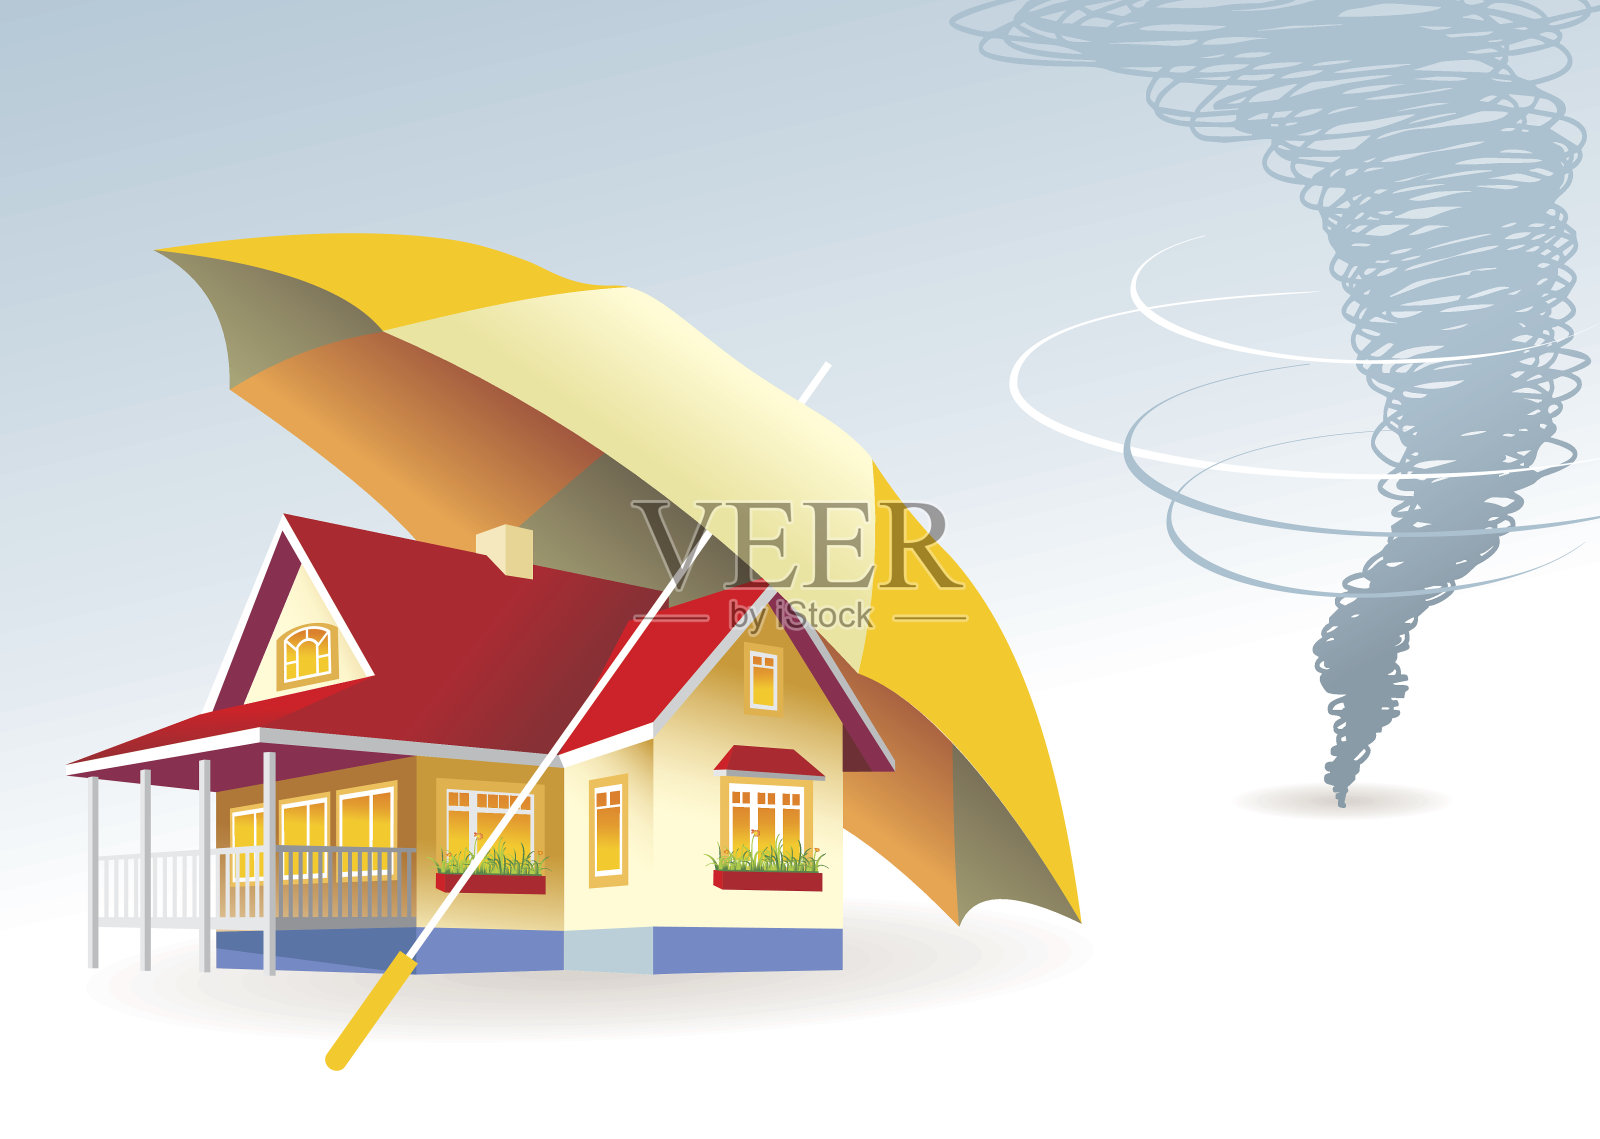 一个巨大的雨伞保护房屋免受龙卷风袭击的图形插画图片素材